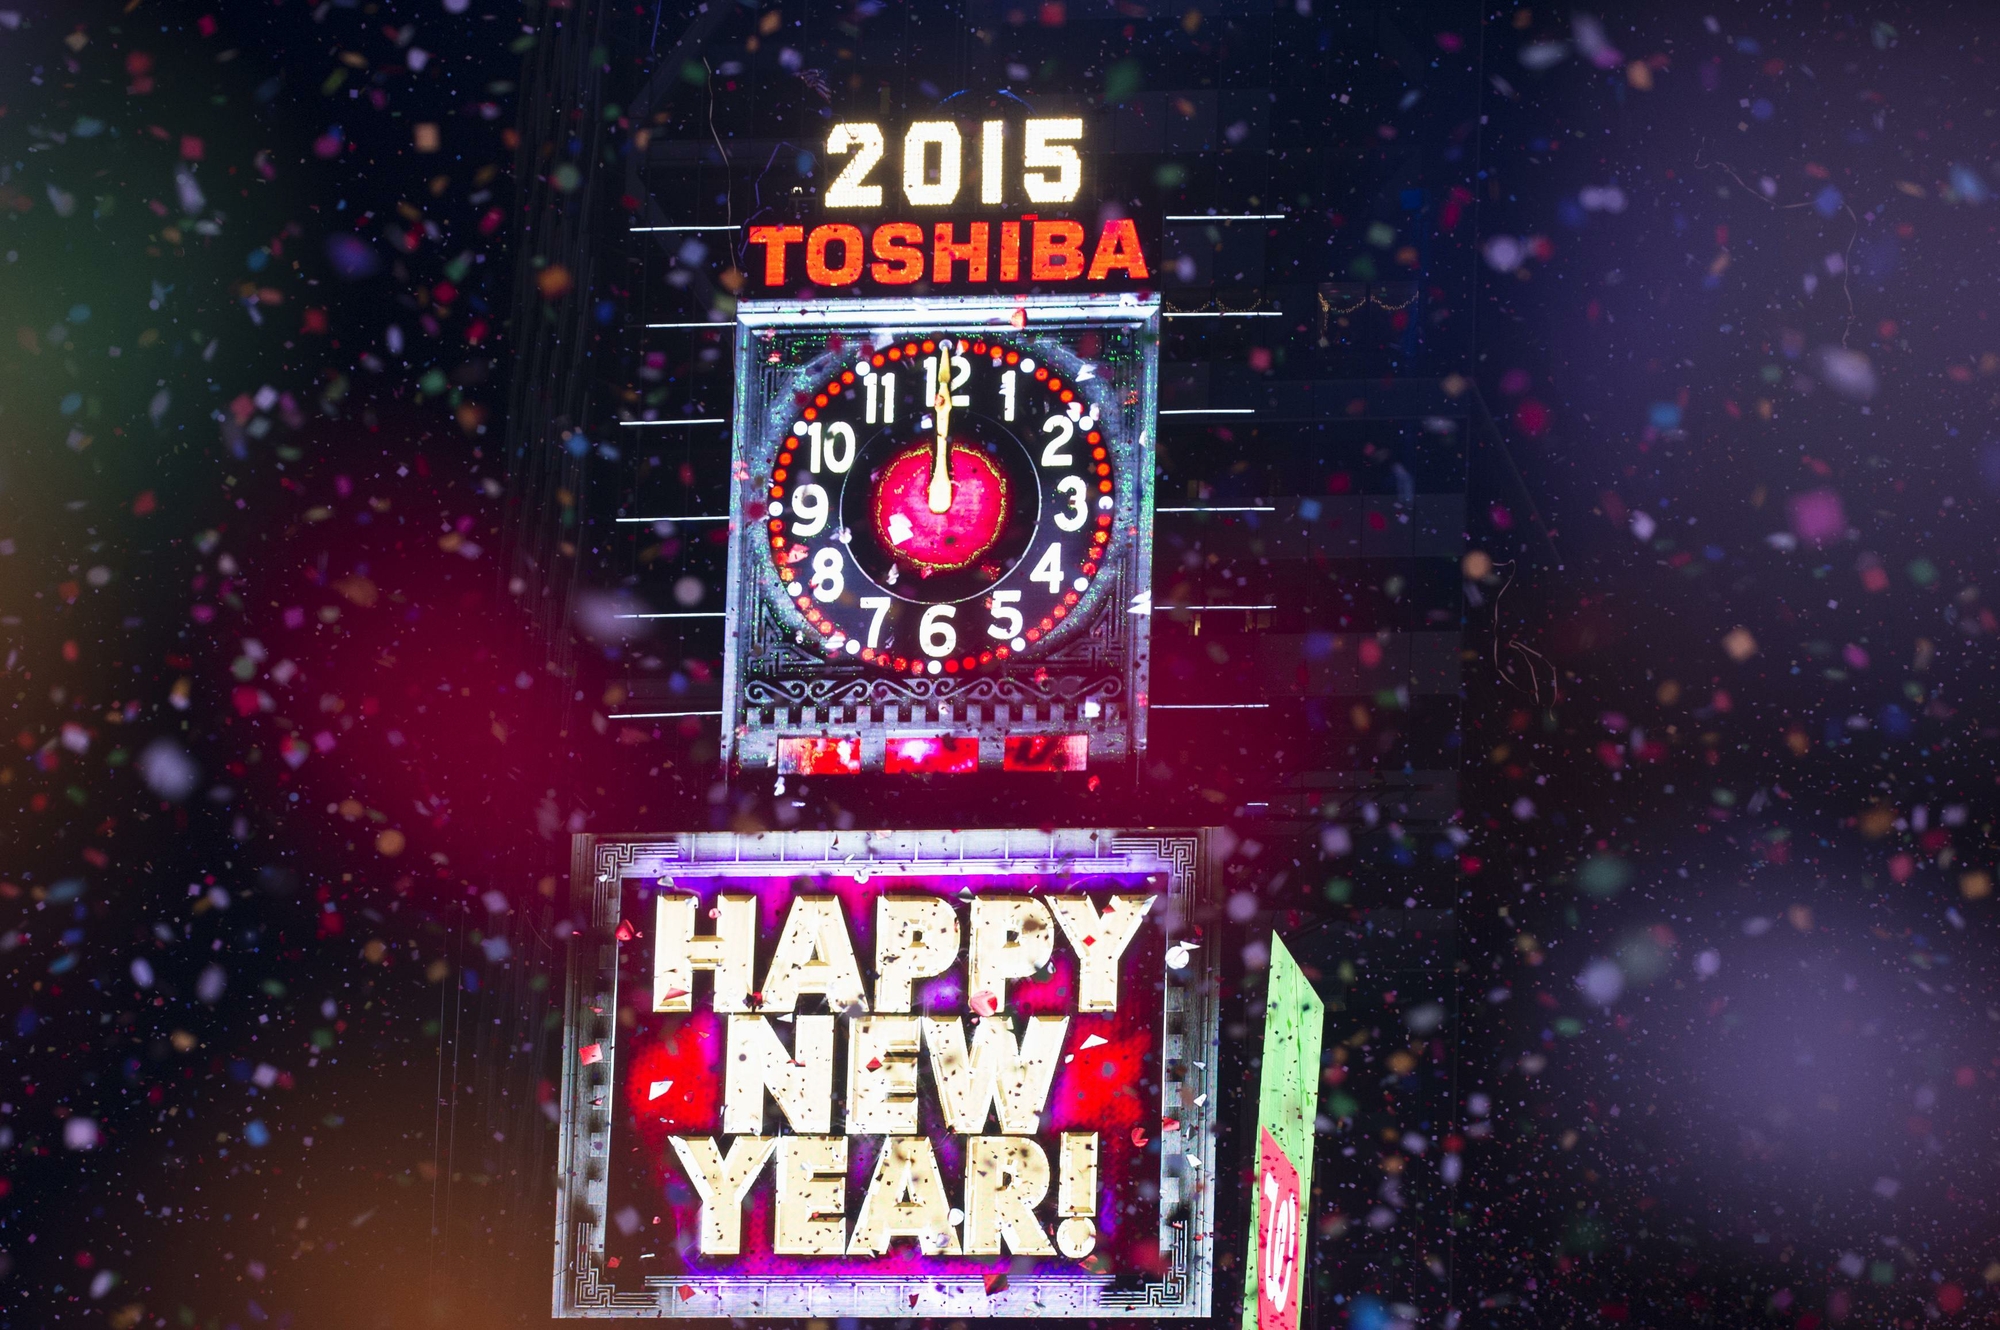 Tradicional relógio da Times Square marca meia-noite, dando início às comemorações de fim de ano